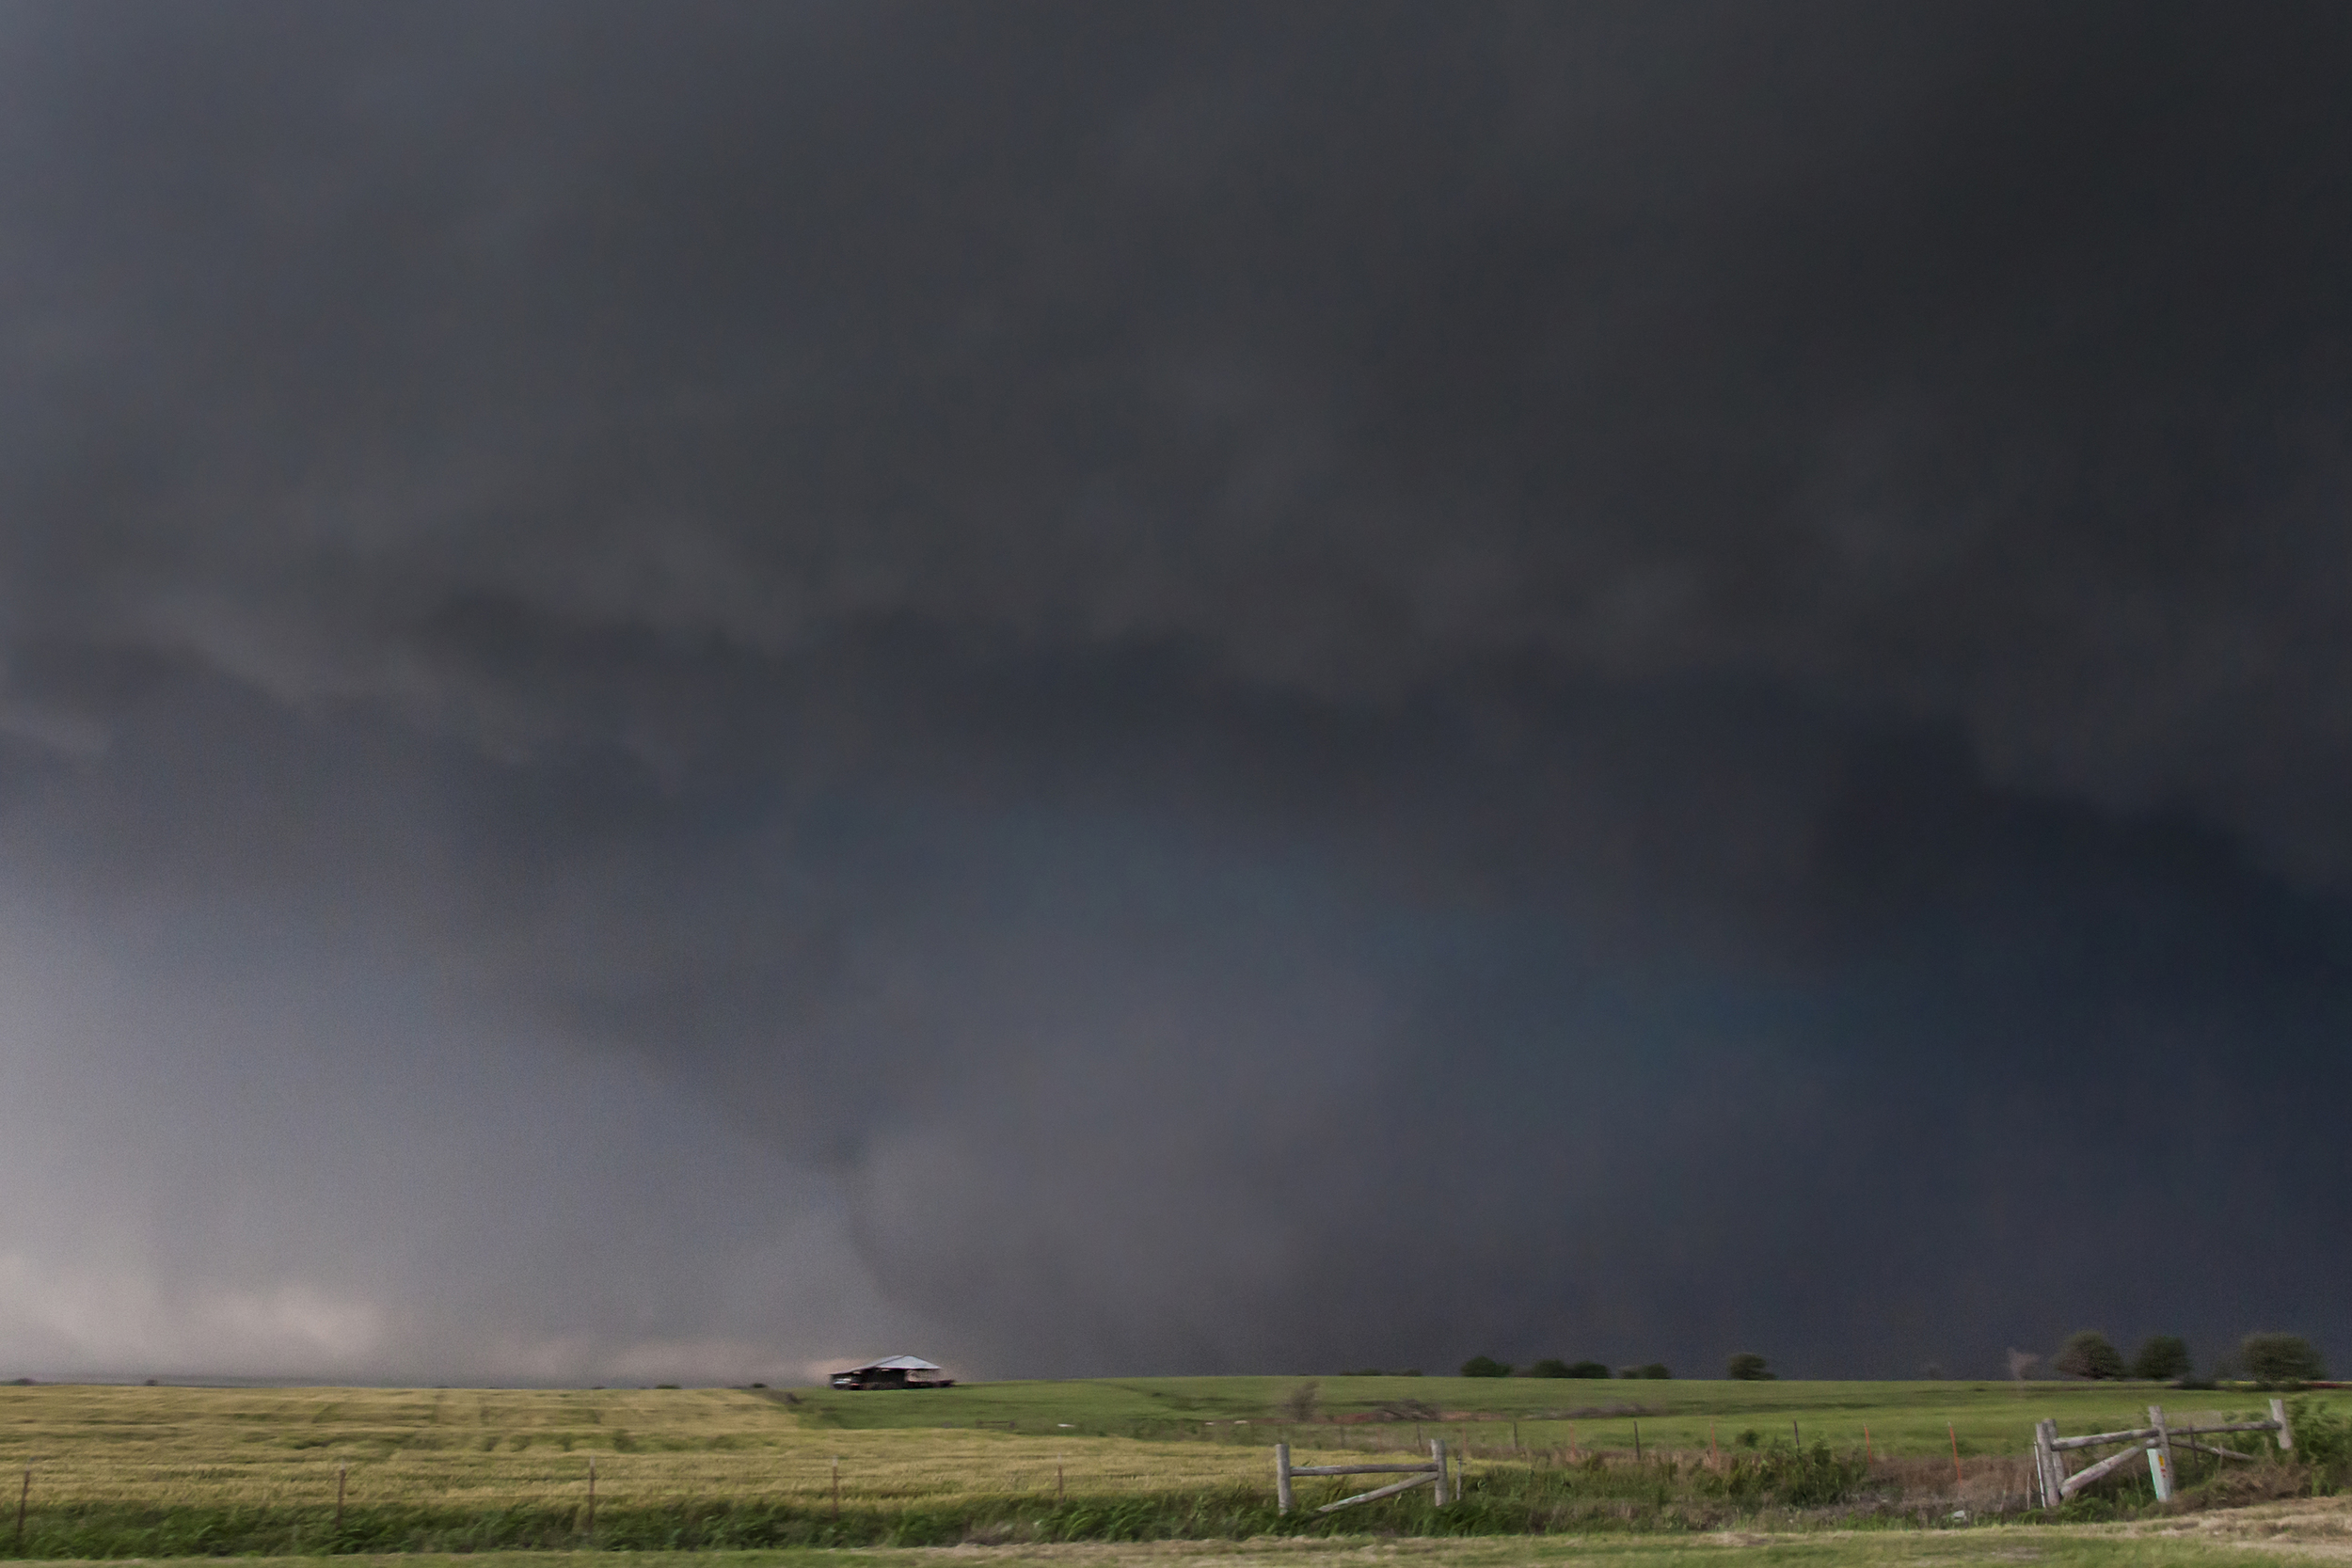  Widest tornado in US History. May 31, 2013 in El Reno, Oklahoma 